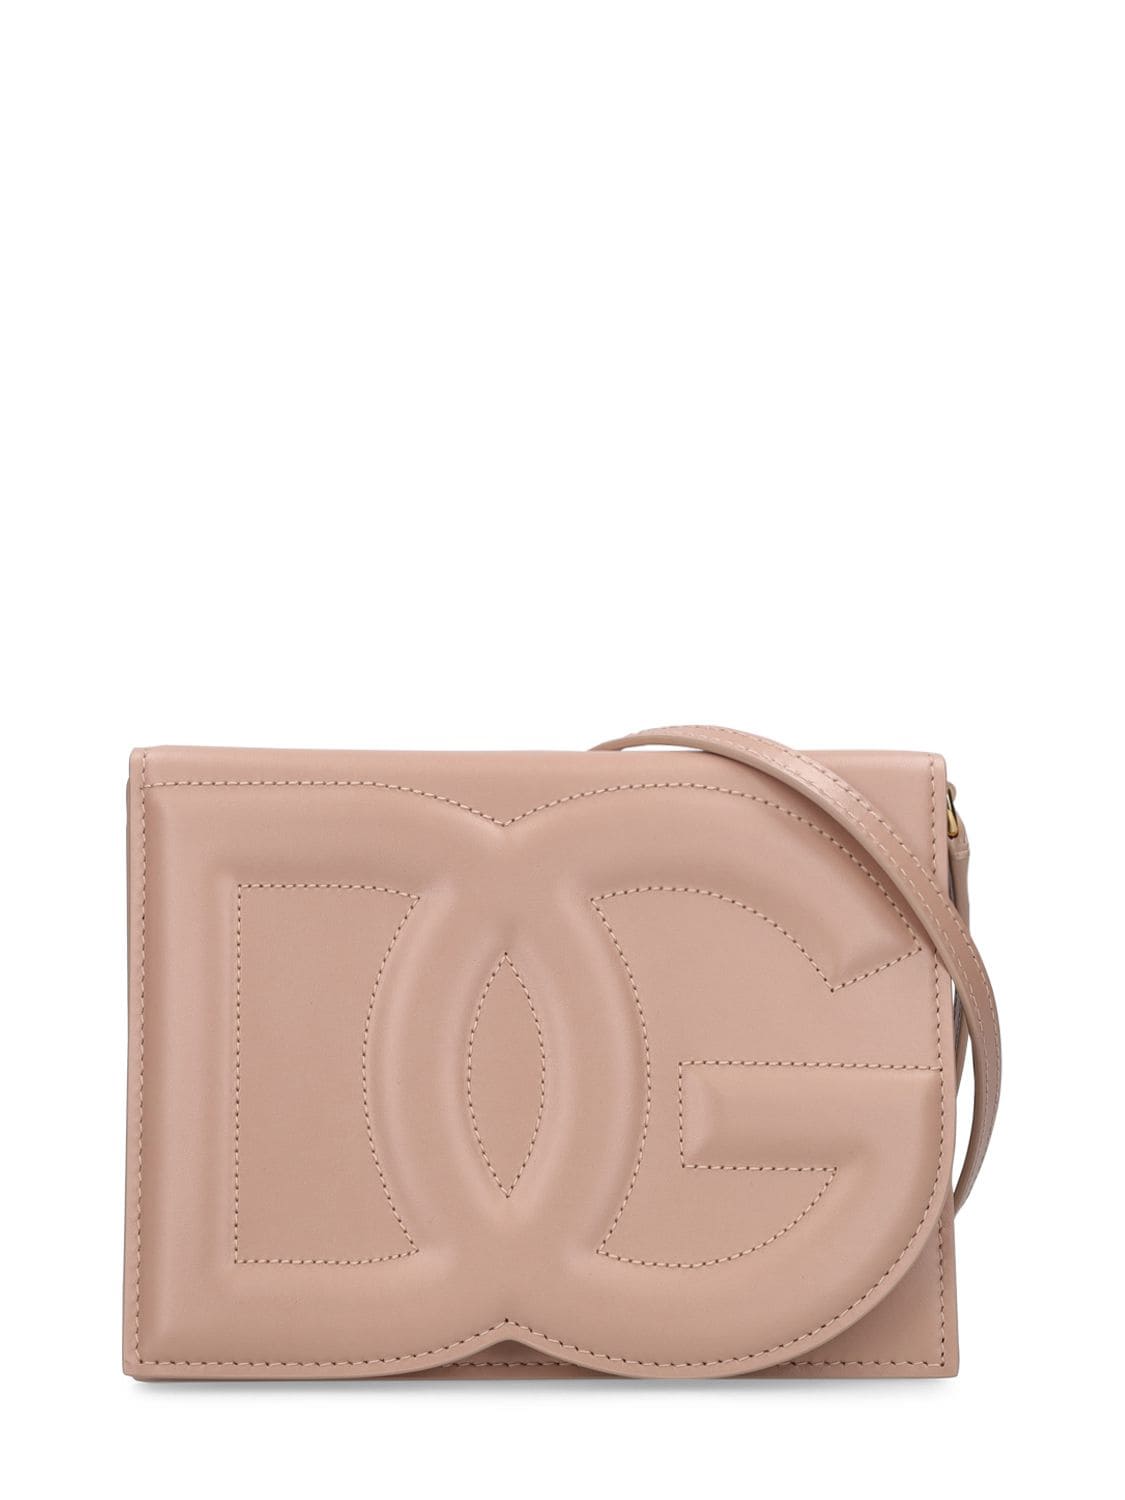 Dolce & Gabbana Women's Logo Leather Shoulder Bag